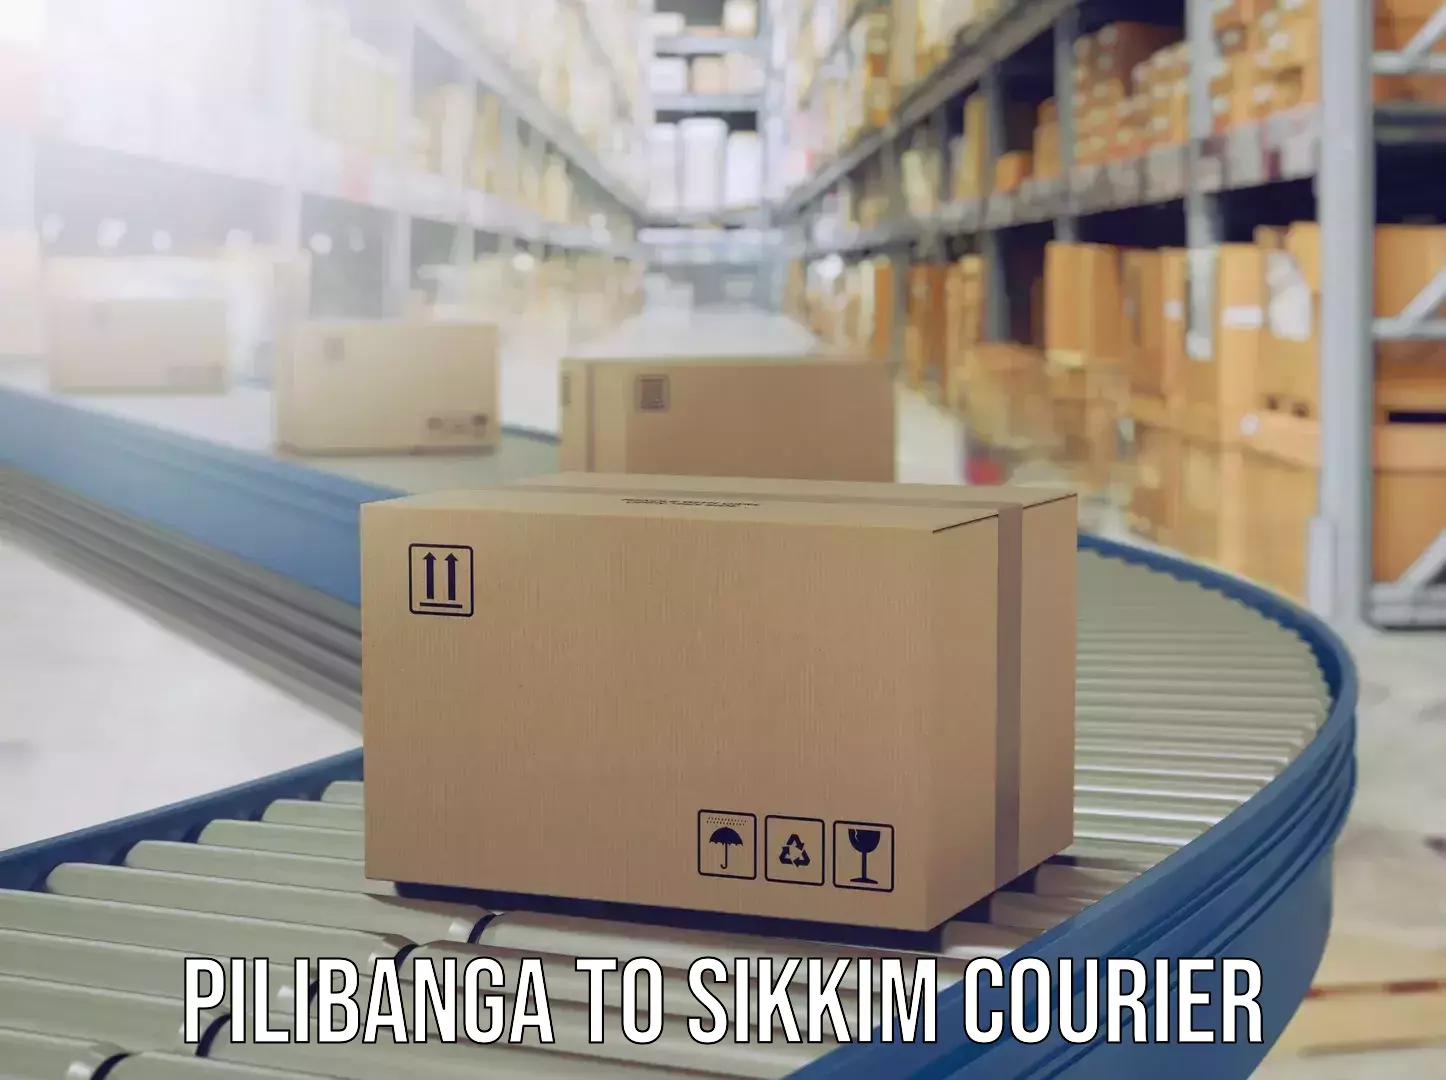 Luggage delivery operations Pilibanga to Singtam